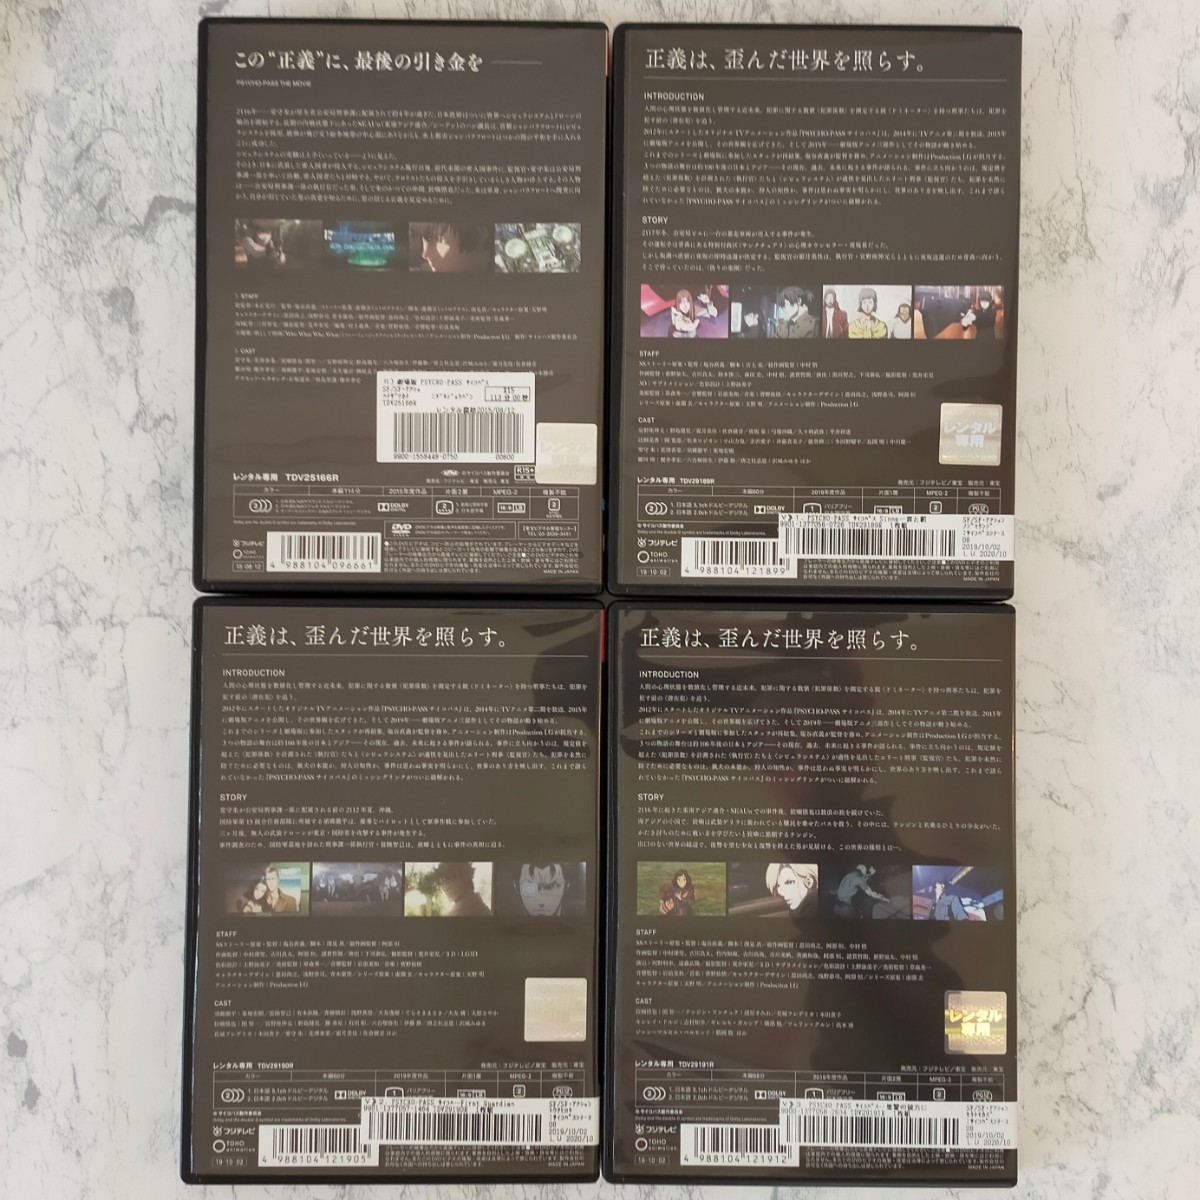 DVD　劇場版 PSYCHO-PASS、SS 全3巻　計4巻セット